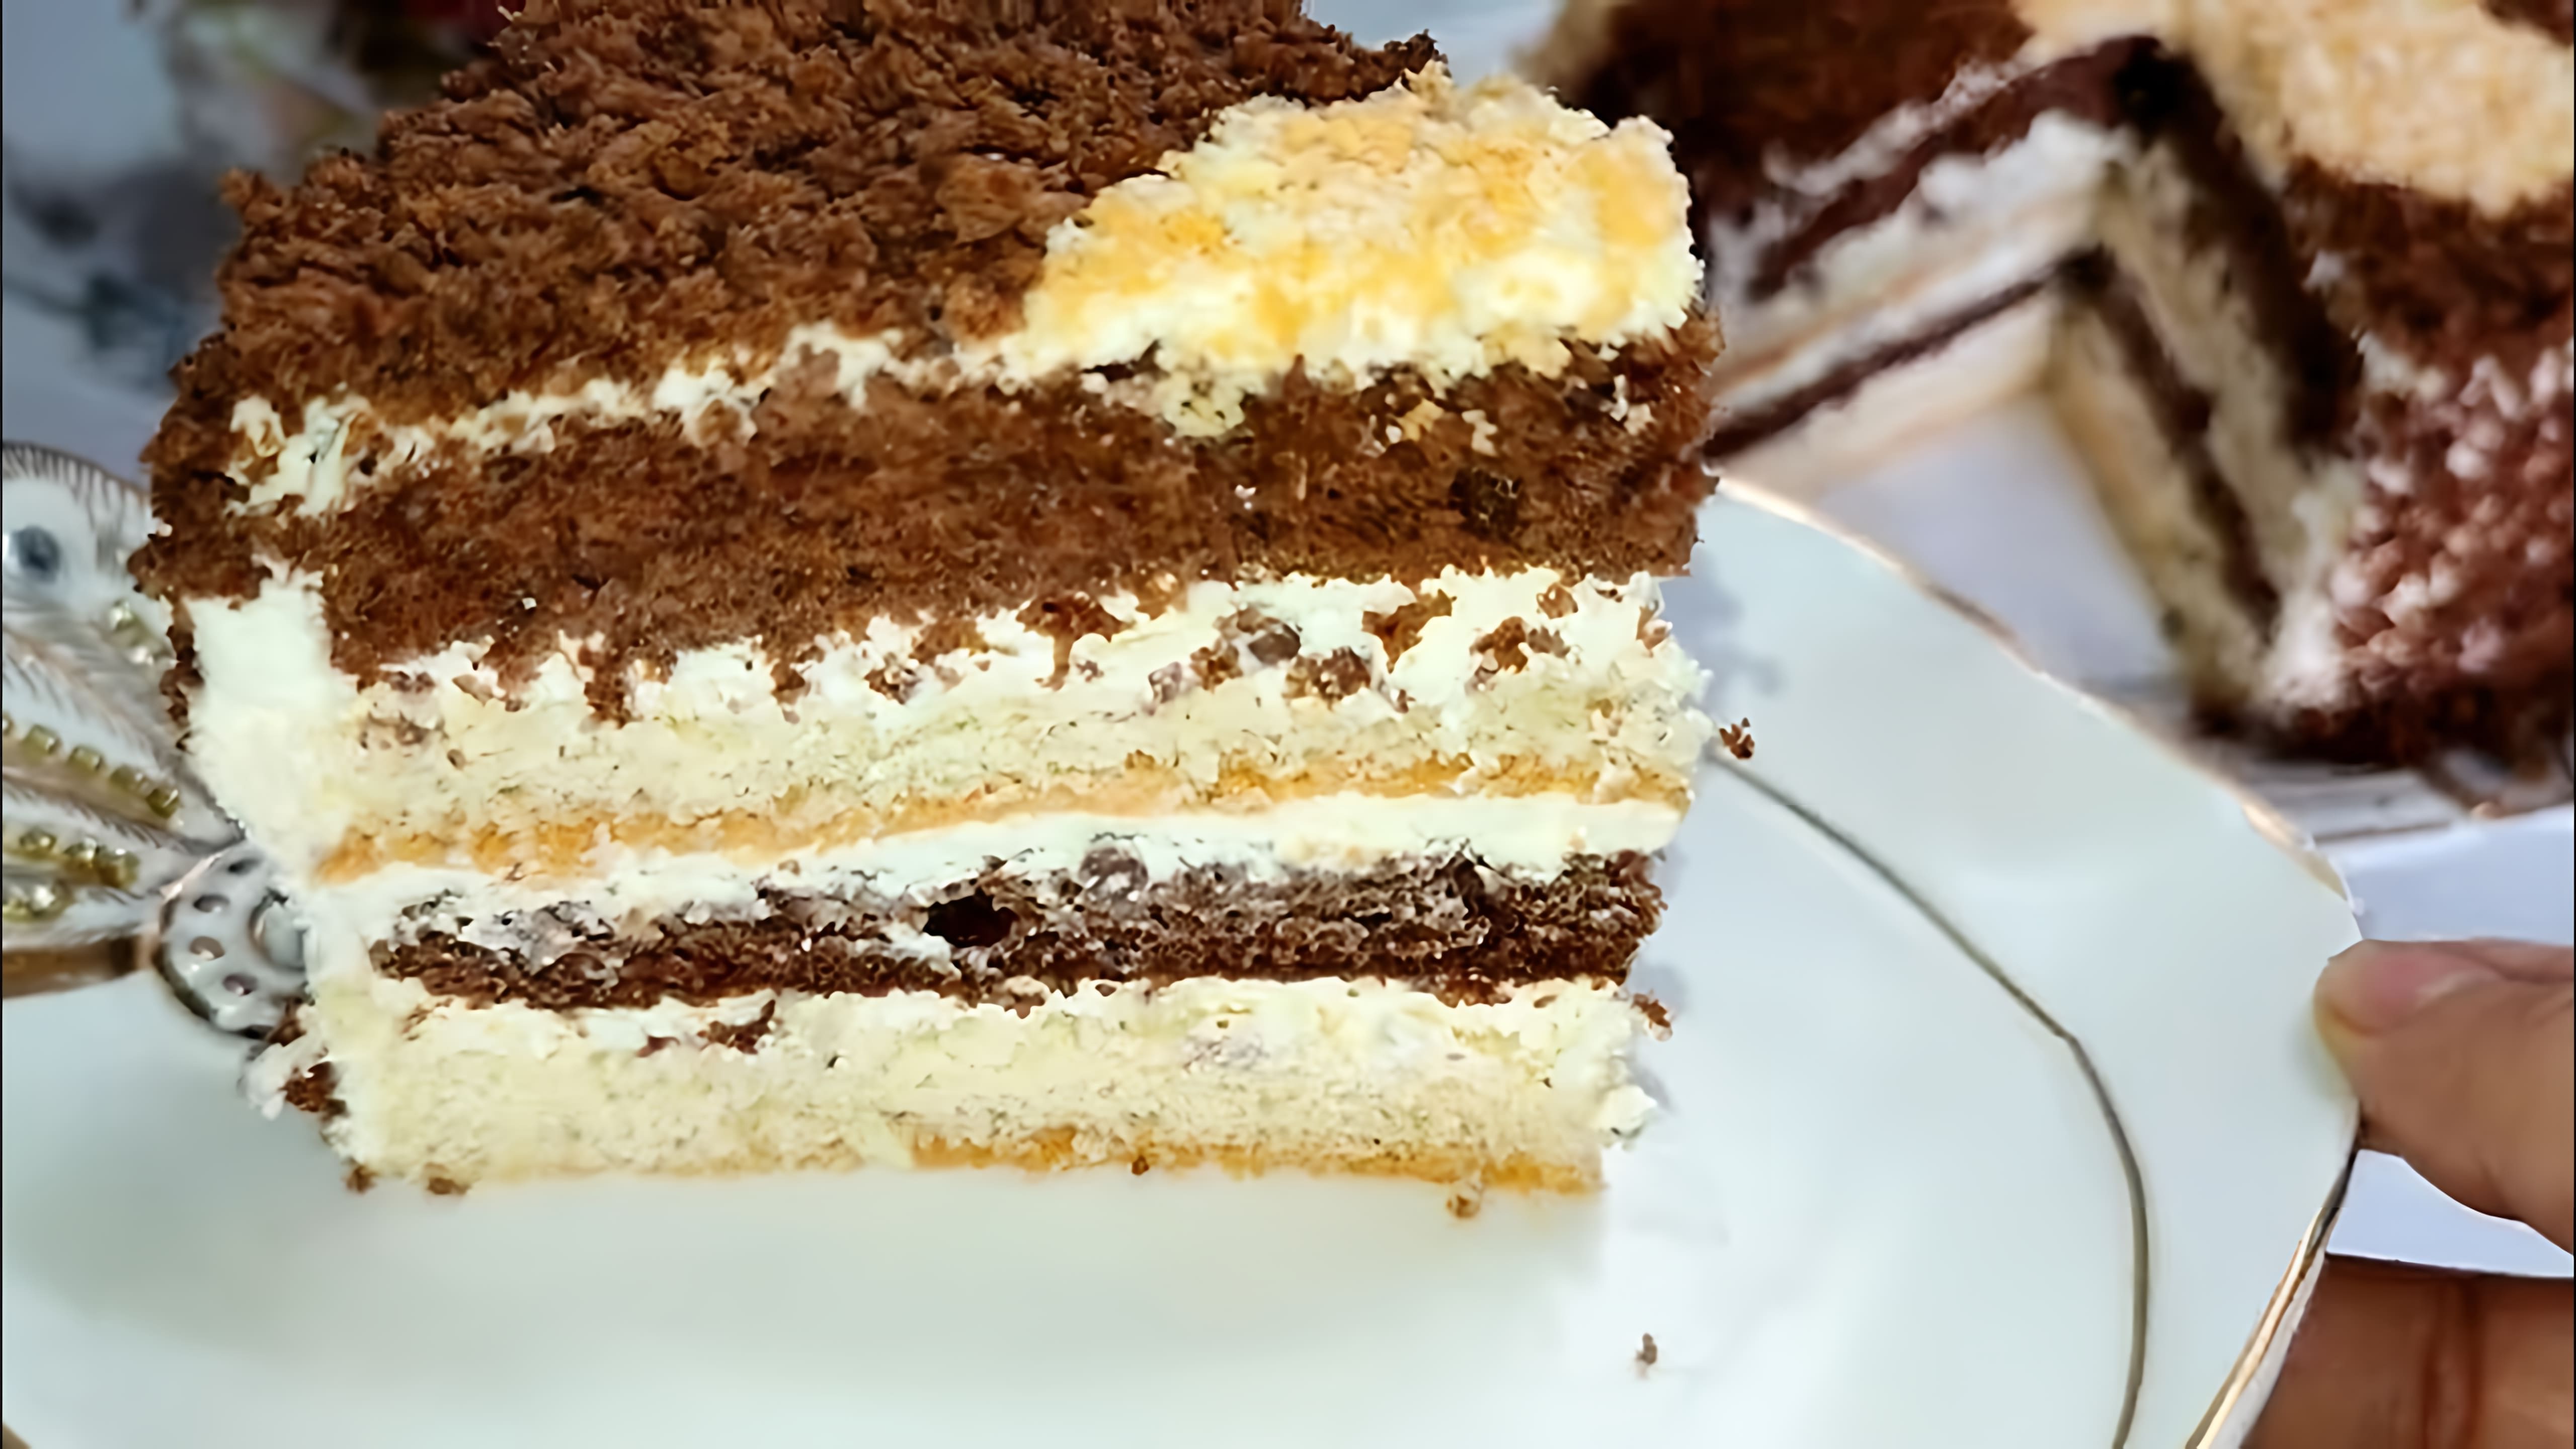 Махровый Торт - это нежный, мягкий, очень вкусный и простой в приготовлении торт